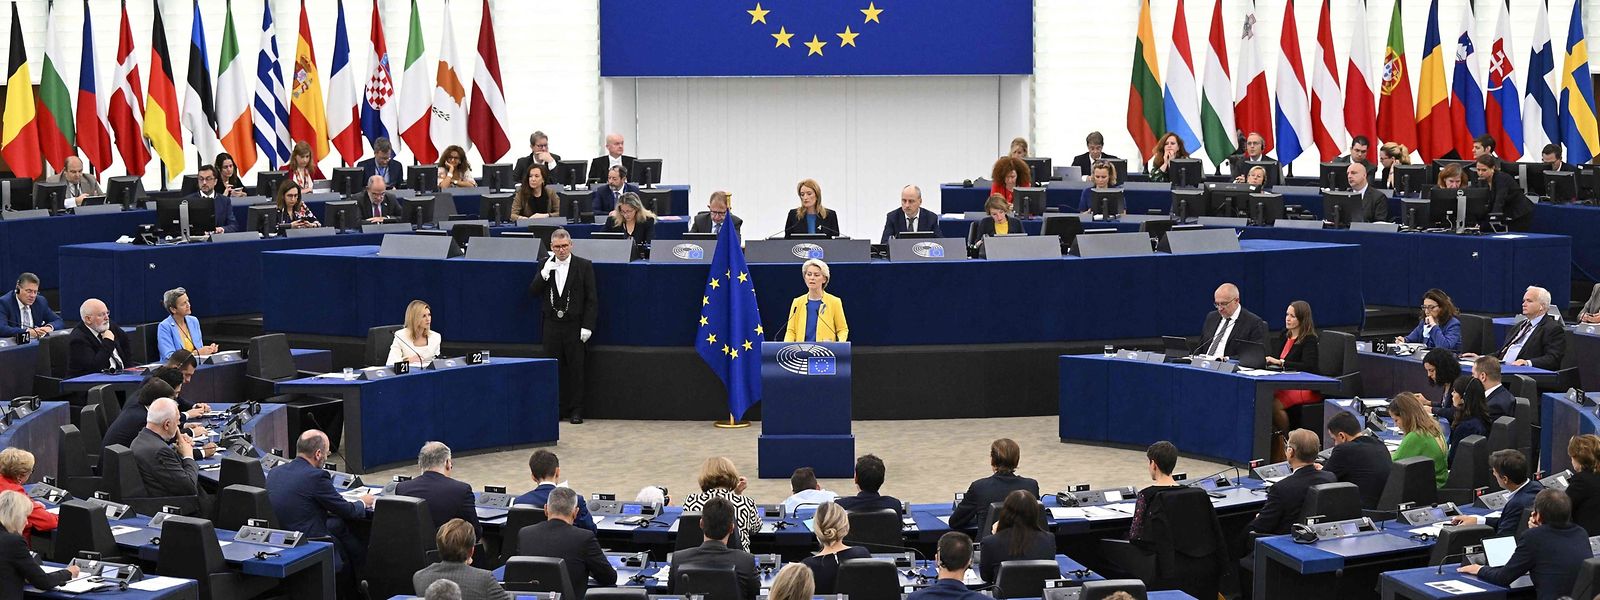 La présidente de la Commission européenne Ursula von der Leyen s'est exprimée devant le Parlement européen de Strasbourg ce mercredi 14 septembre.